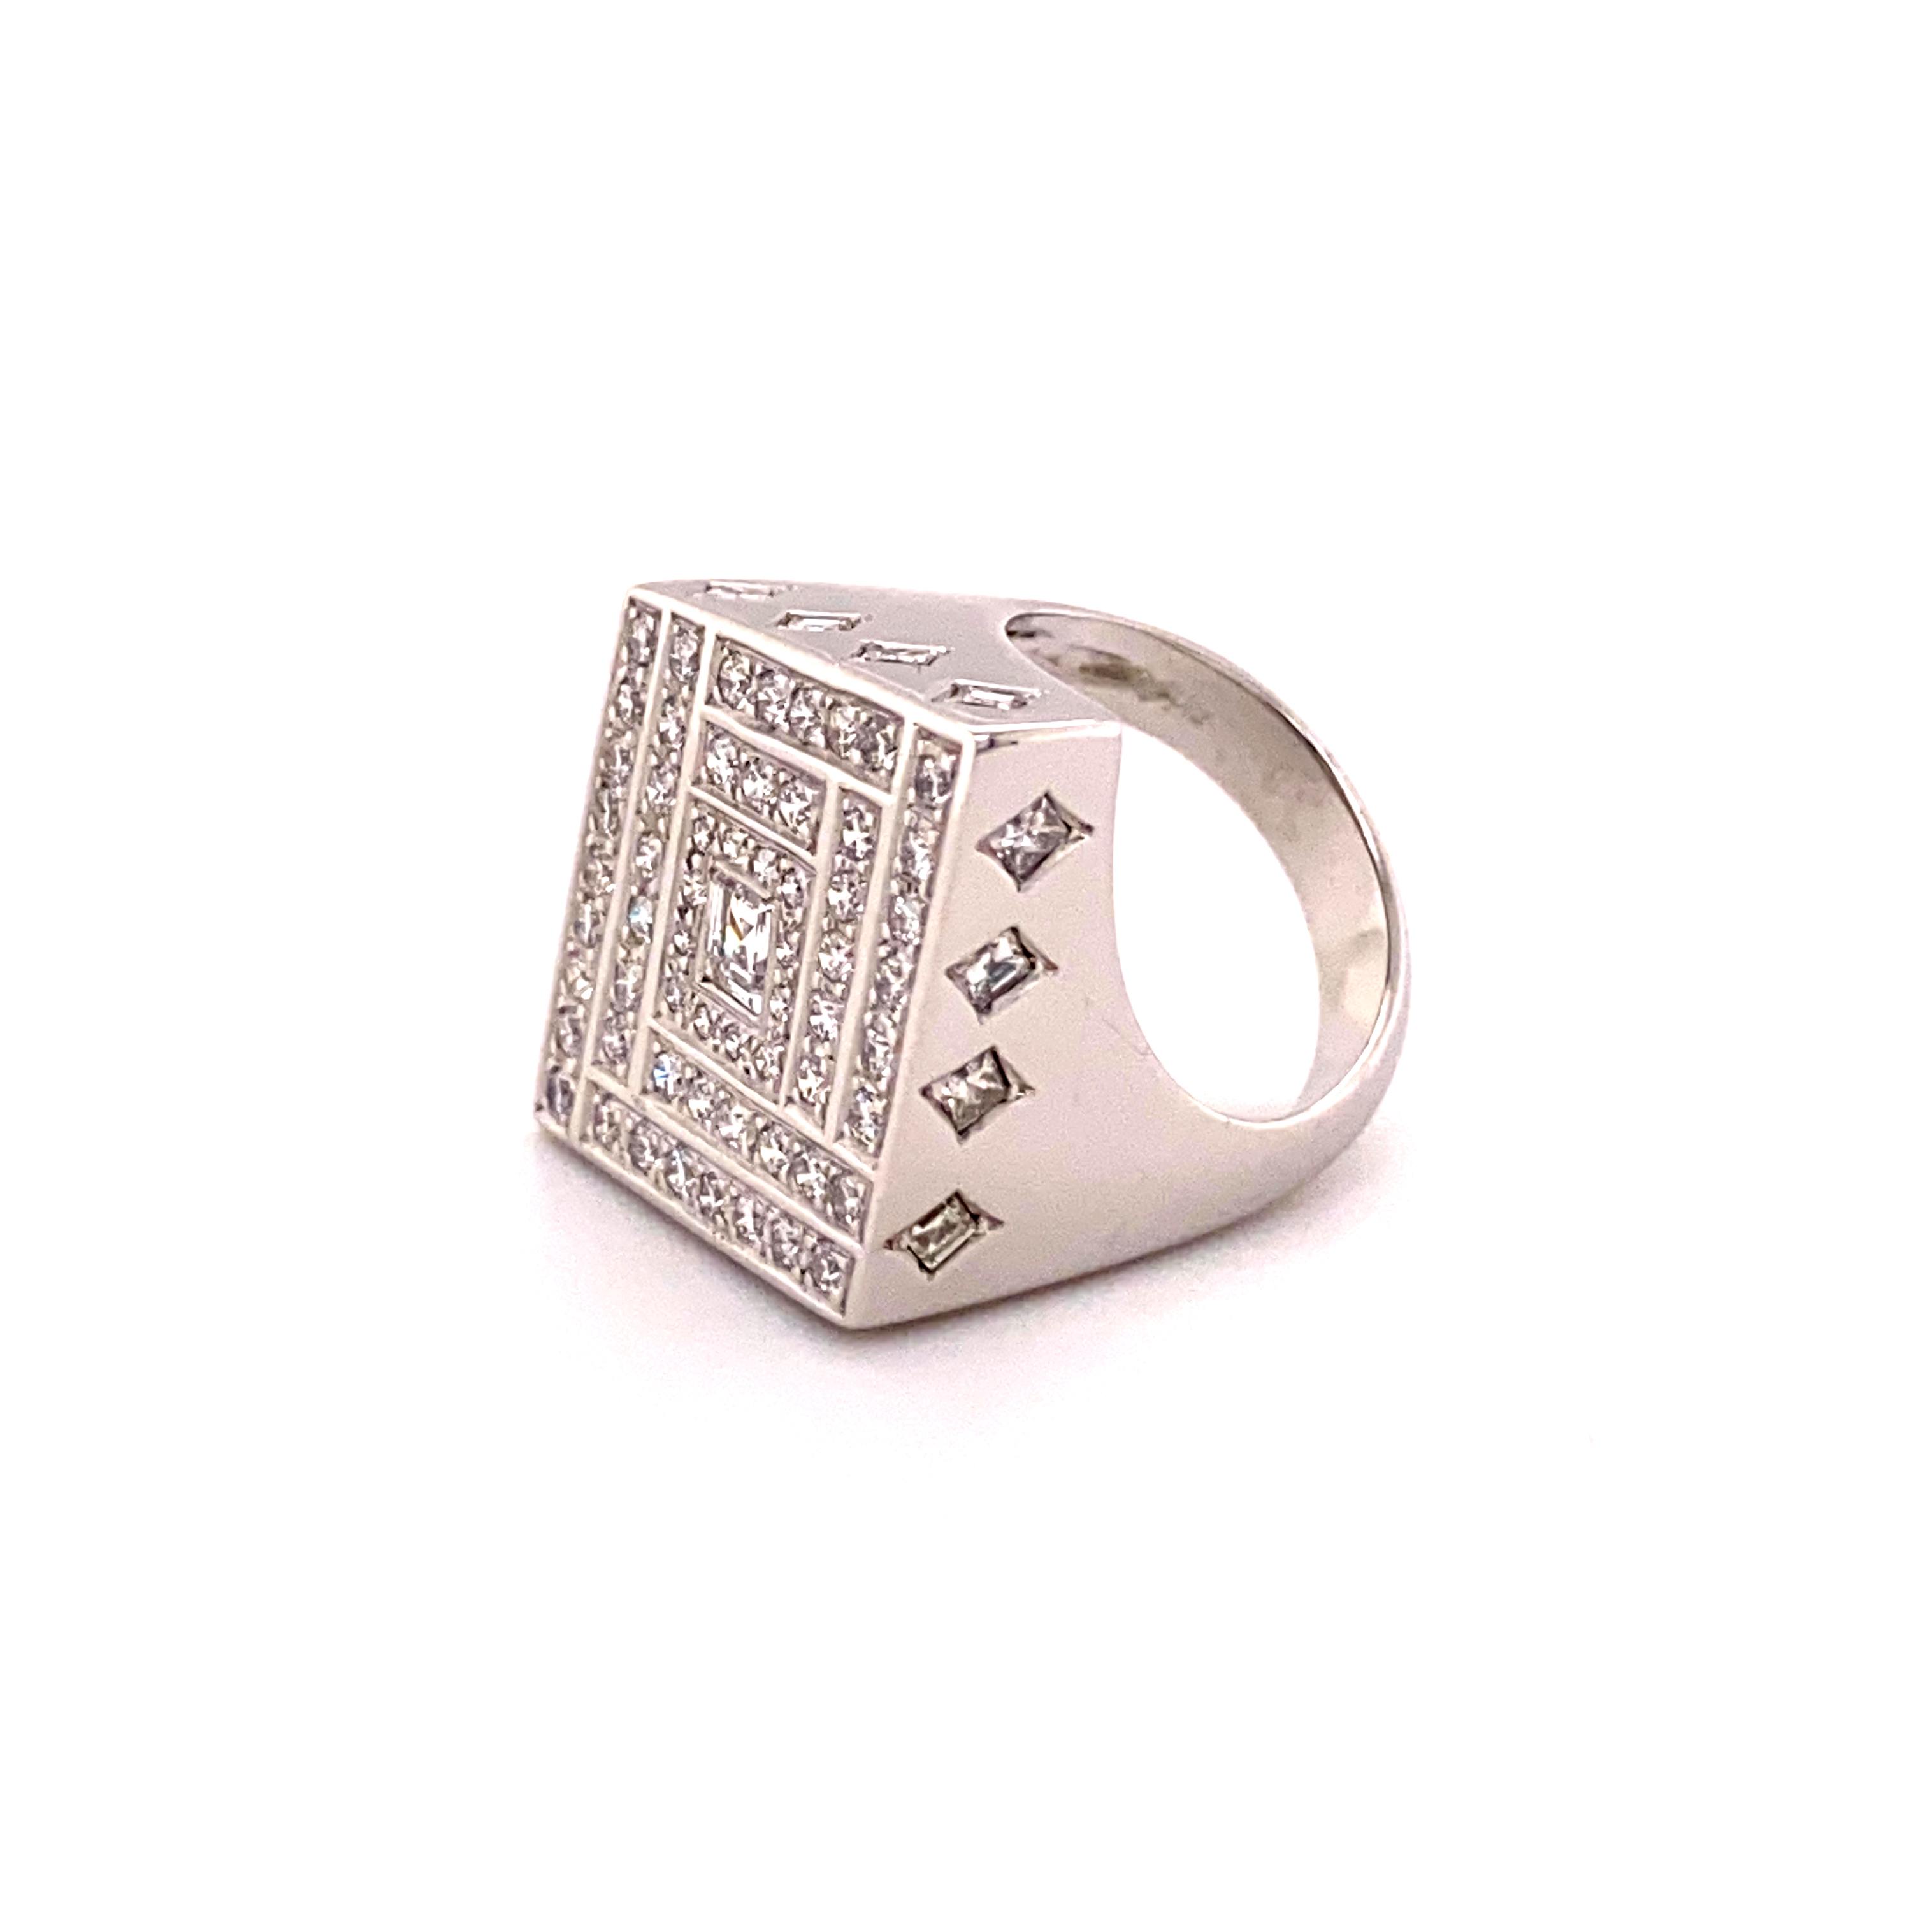 Rhombic Shaped Diamond Ring In 18 Karat White Gold